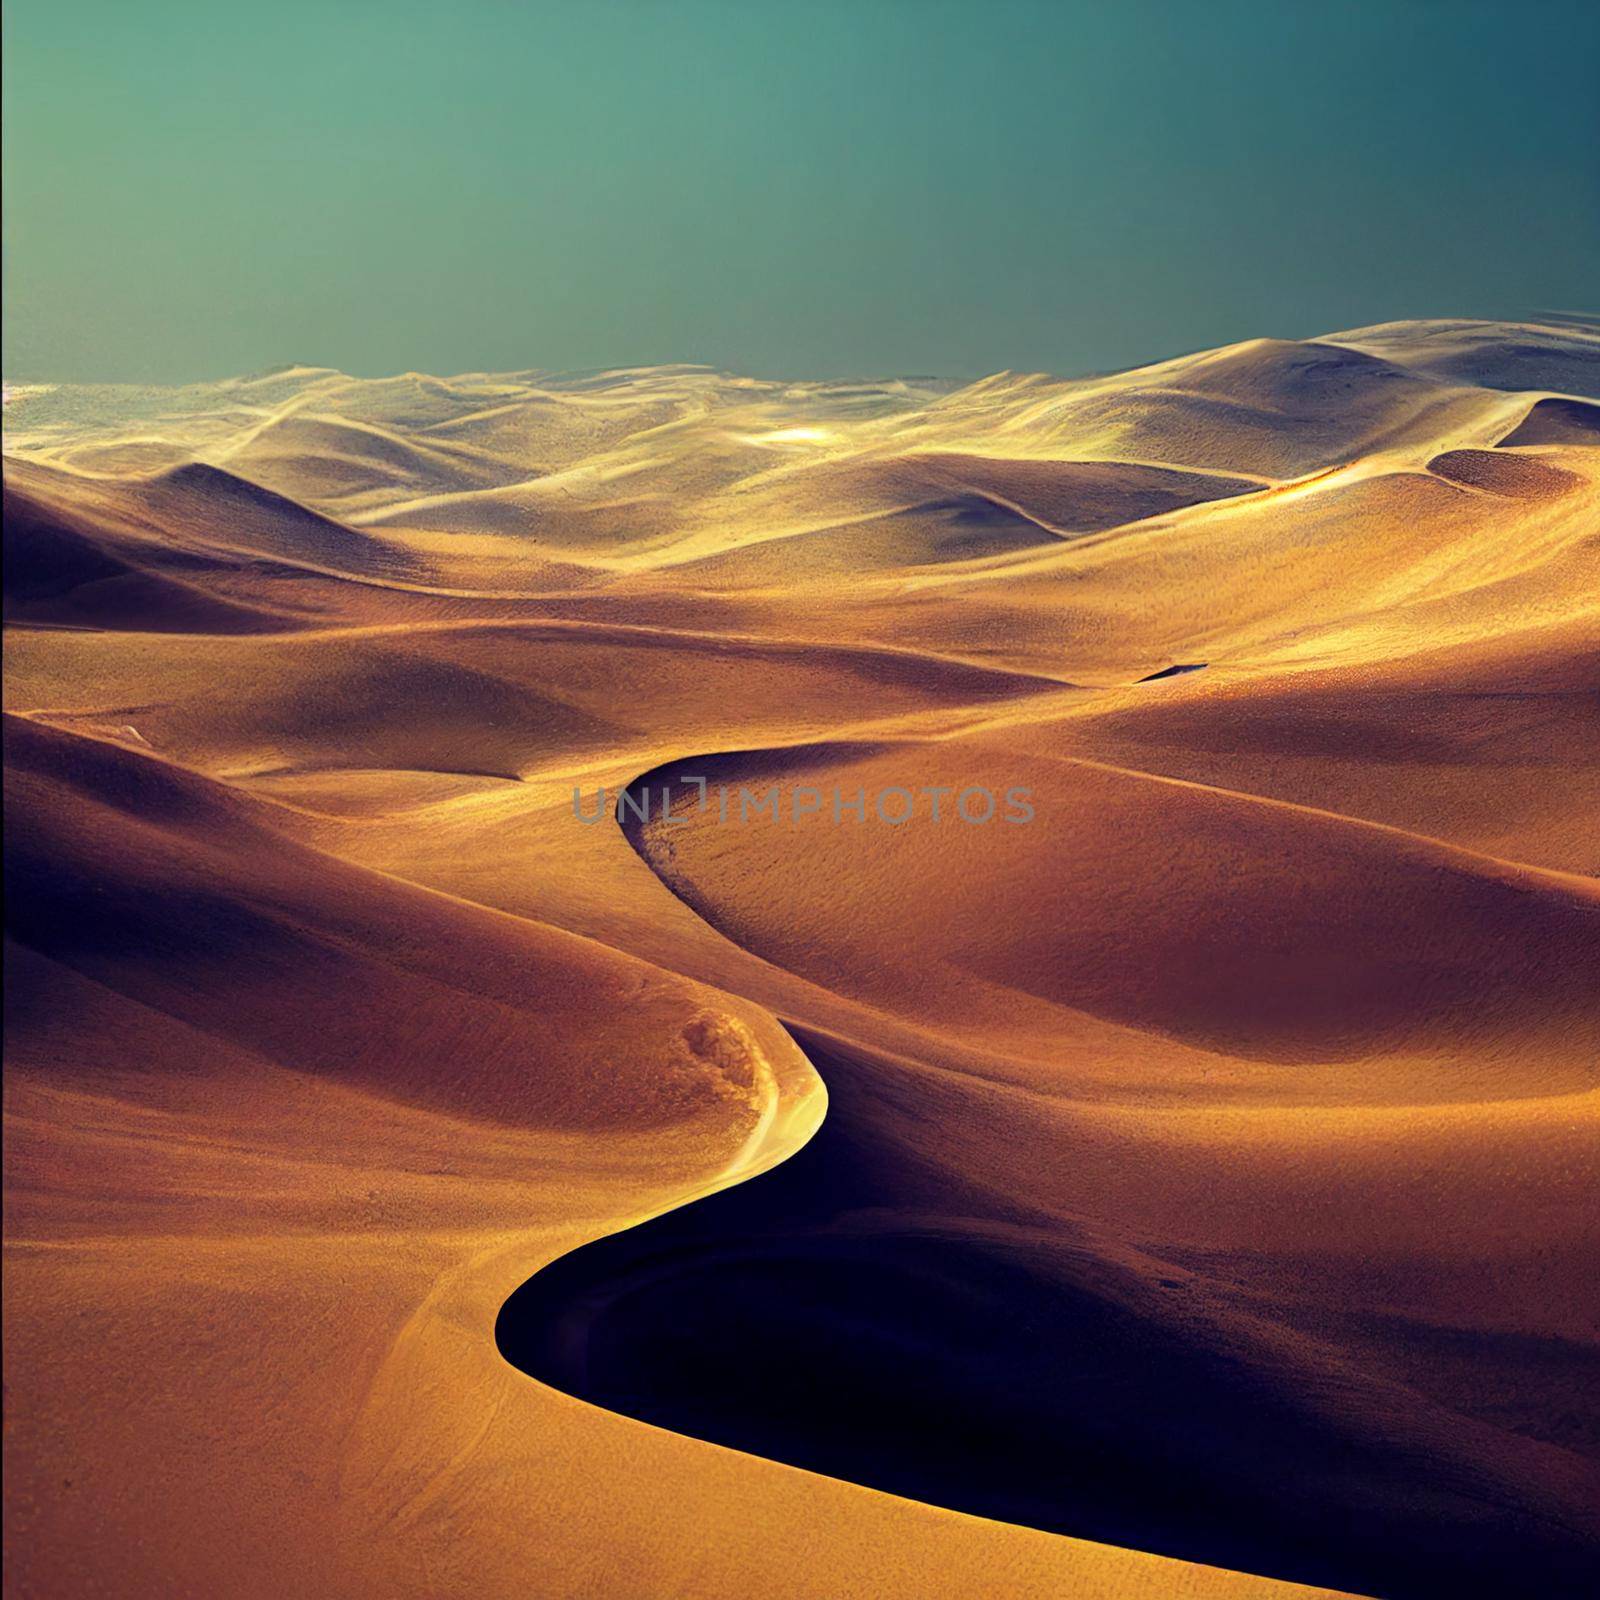 Sand dunes in the desert. High quality illustration